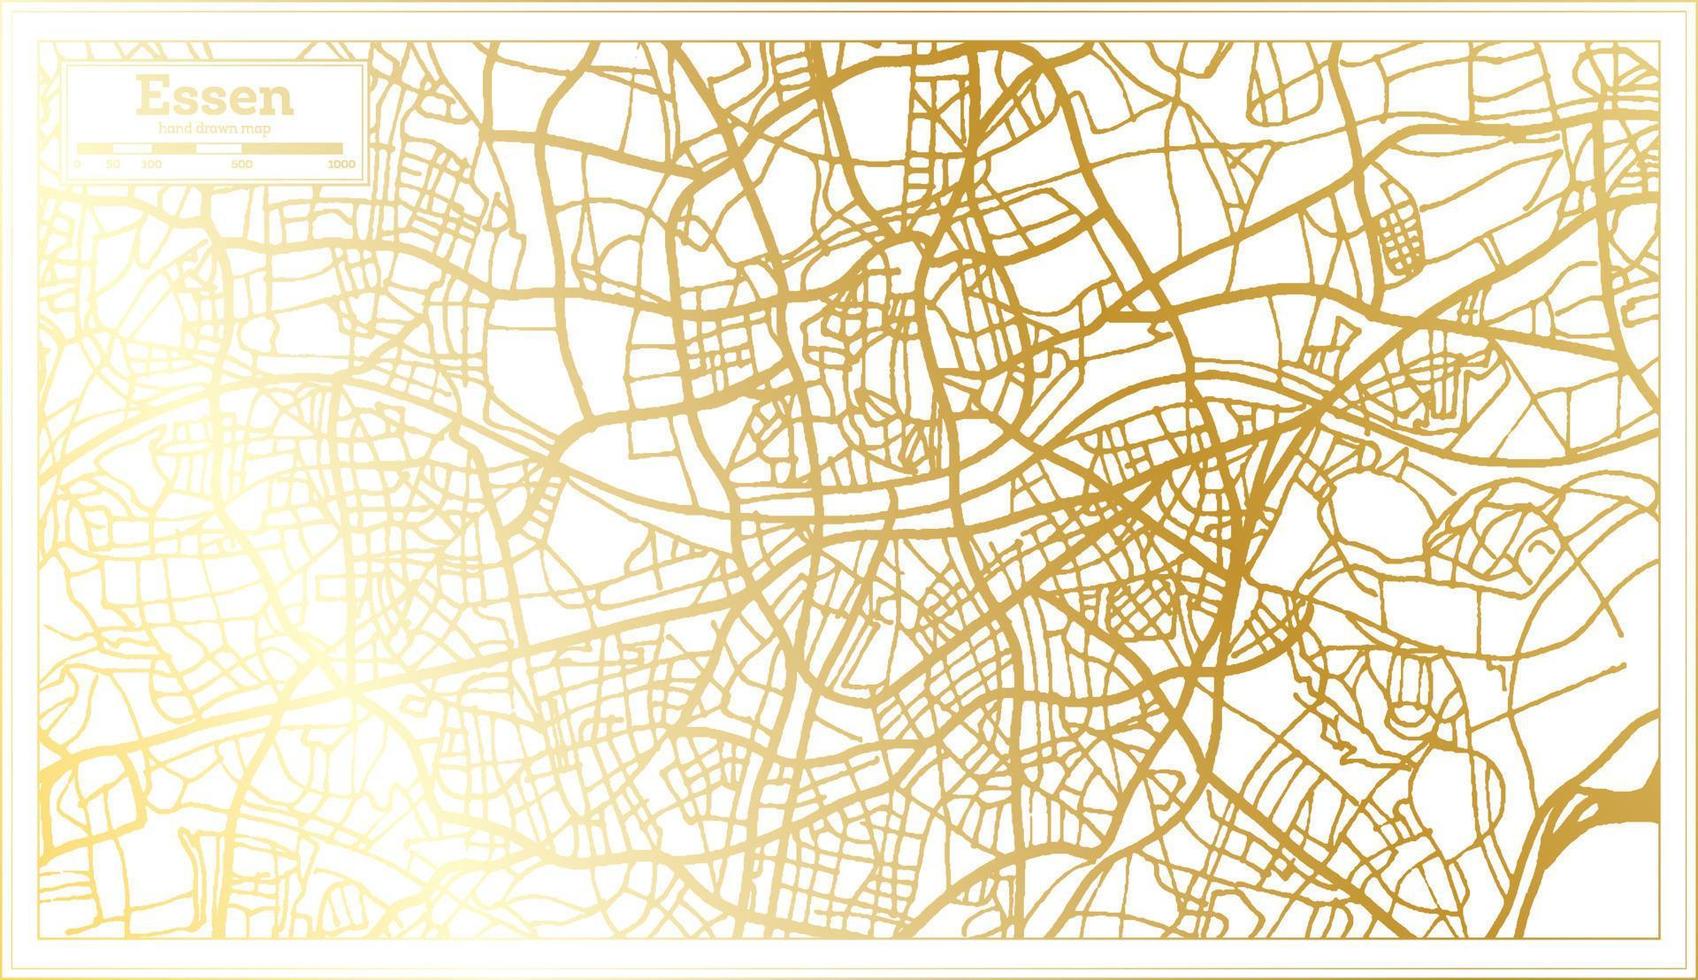 mapa de la ciudad de essen alemania en estilo retro en color dorado. esquema del mapa. vector